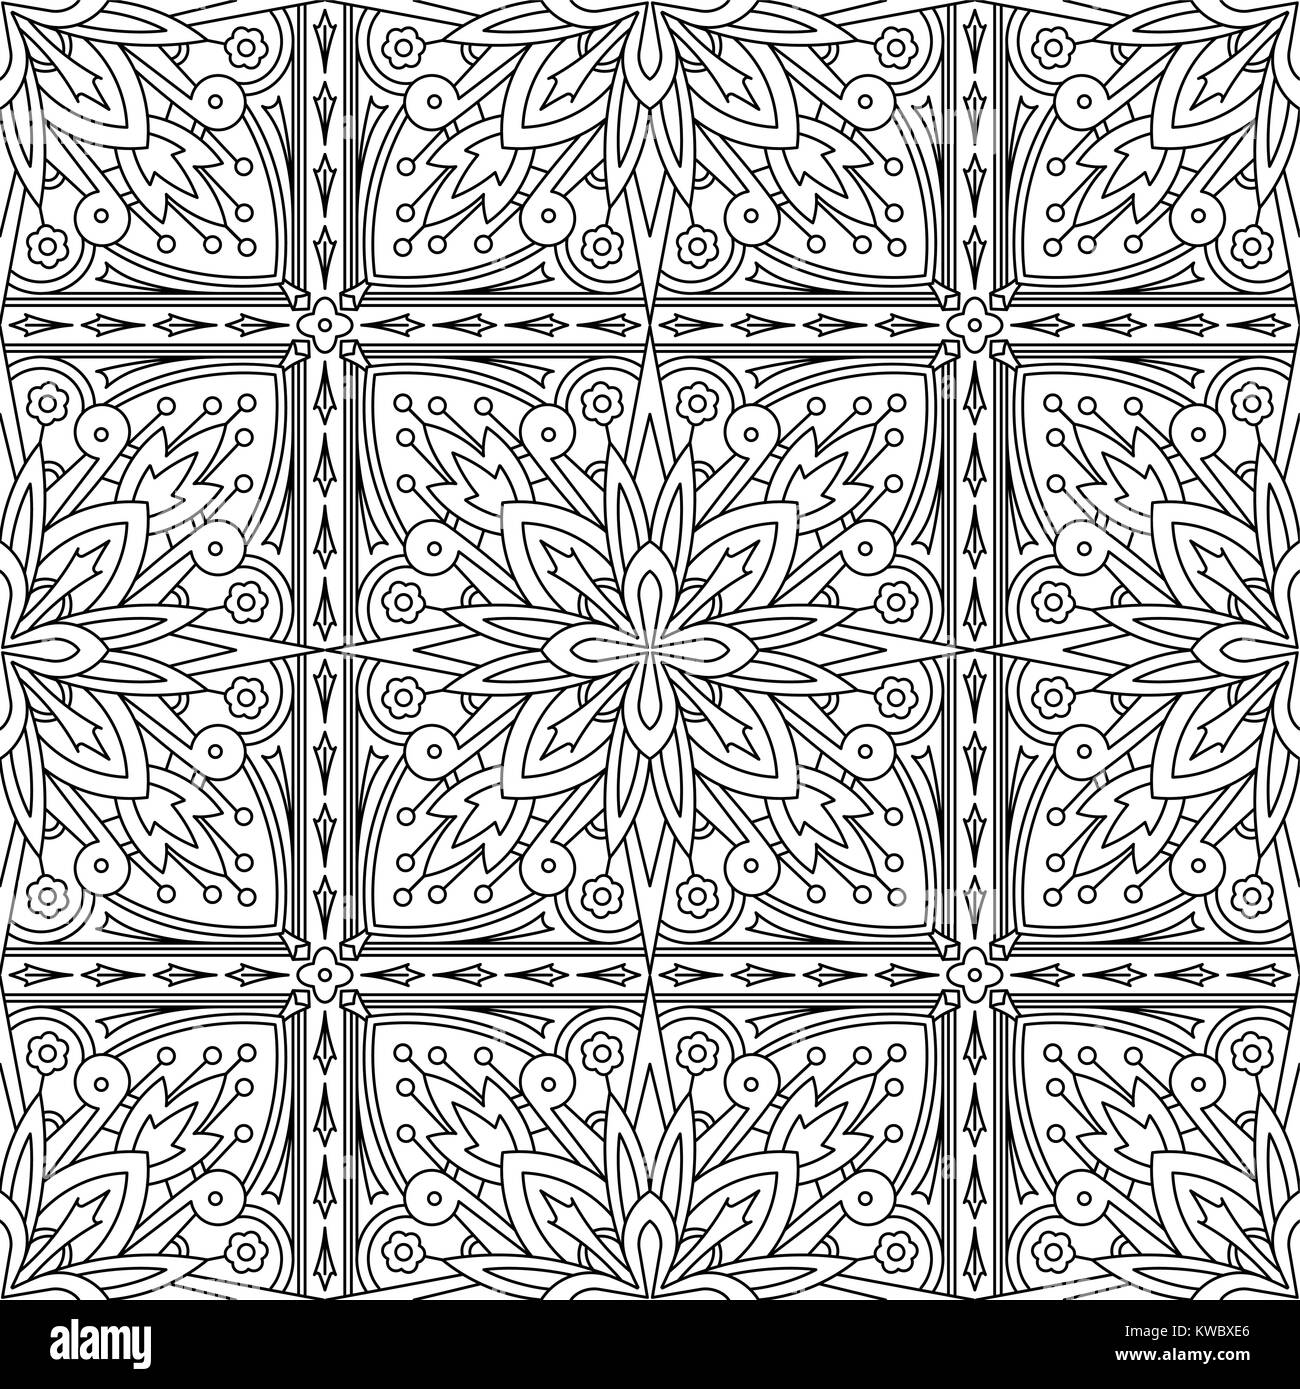 Seamless Tribali Astratti Nera-bianca Pattern in Mono Stile linea. Disegnato a mano Texture etniche. Può essere utilizzato come anti-stress per la terapia di colorazione o colorin Illustrazione Vettoriale